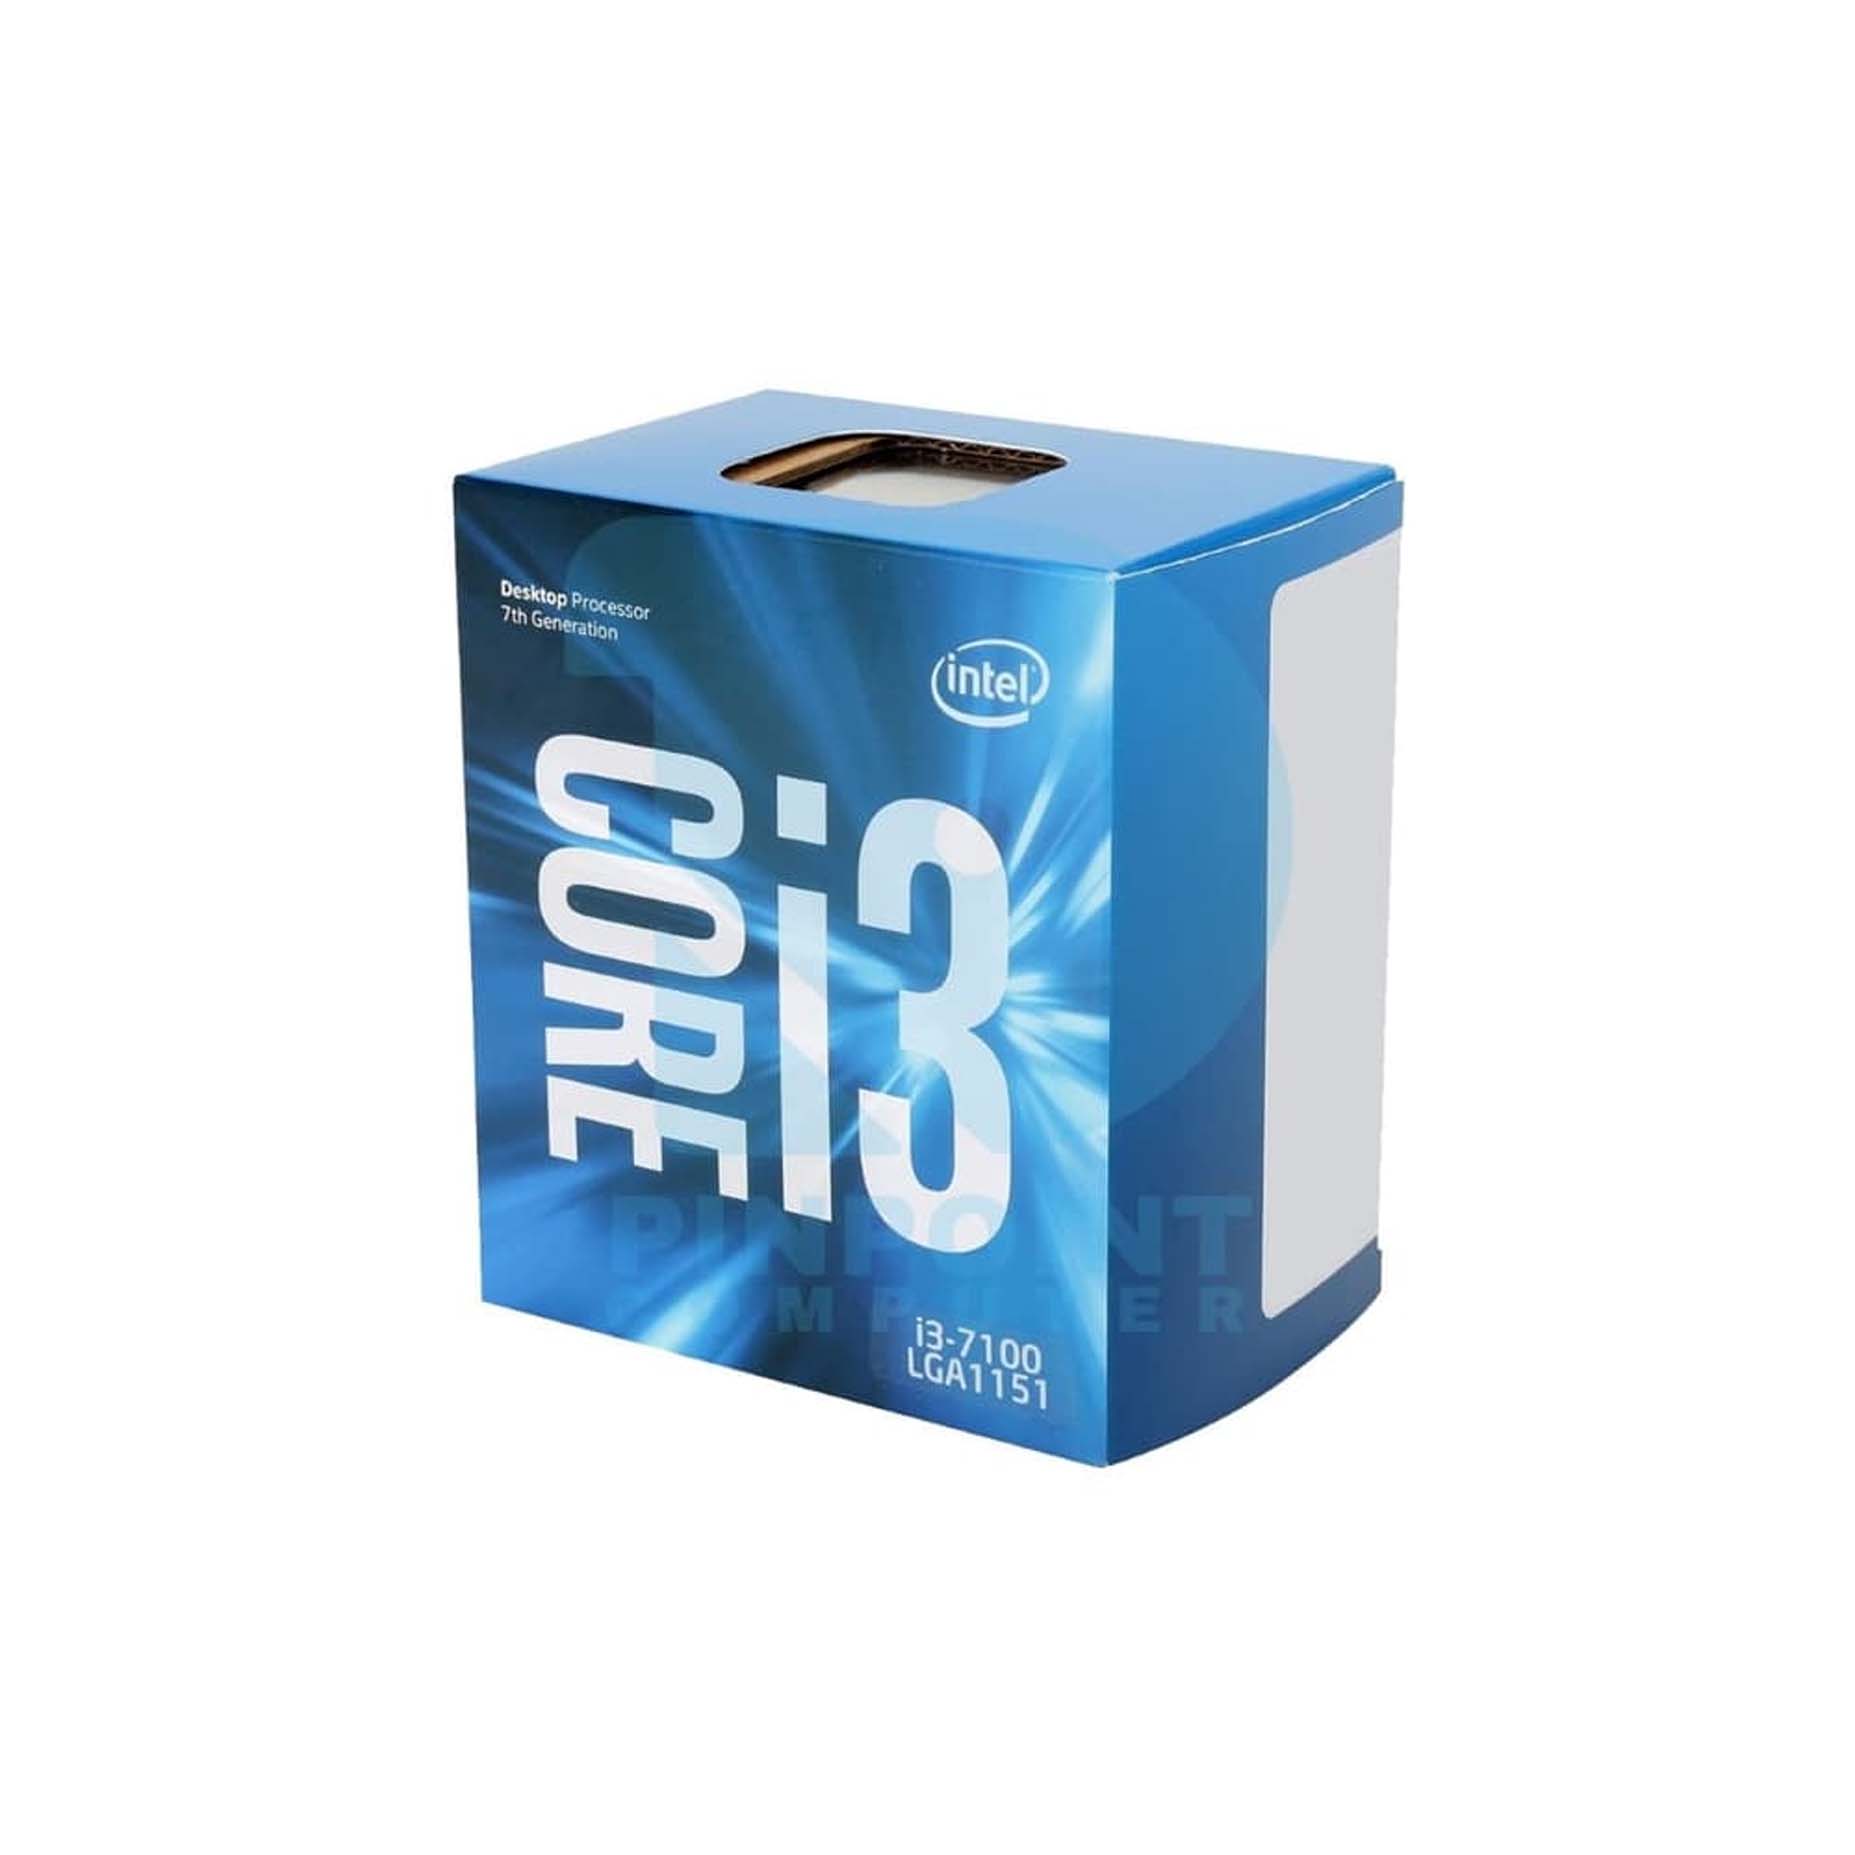 Harga Jual Processor Intel Core i3-7100 3M Cache 3.90GHz LGA1151